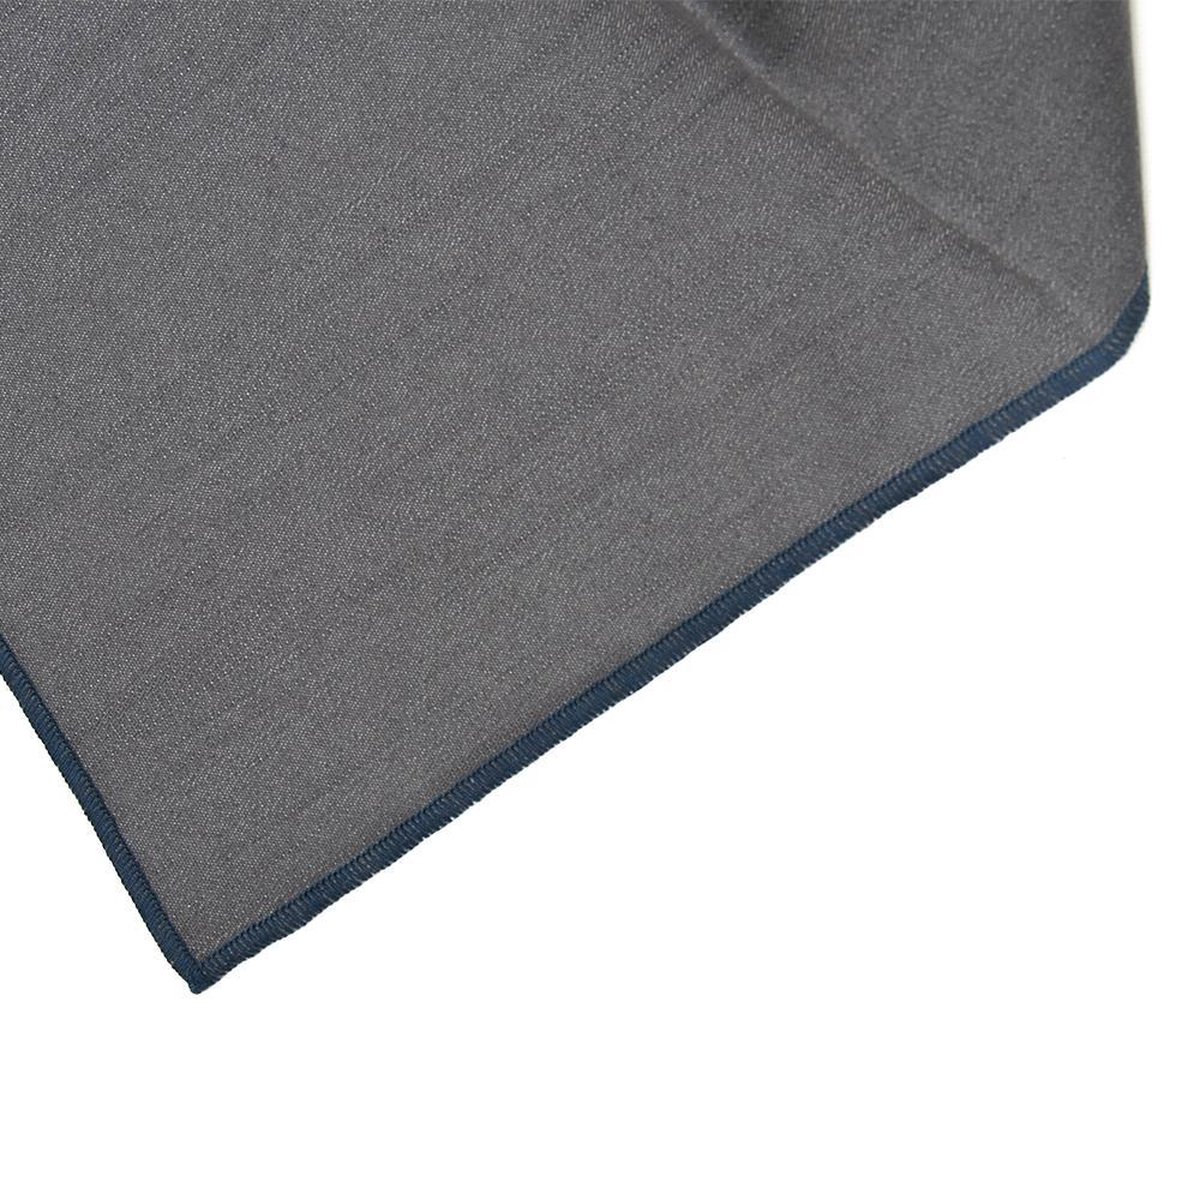 Denim grijs tafelkleed - met blauwe rand - Bliek Tof Tafelen - 140x350 cm